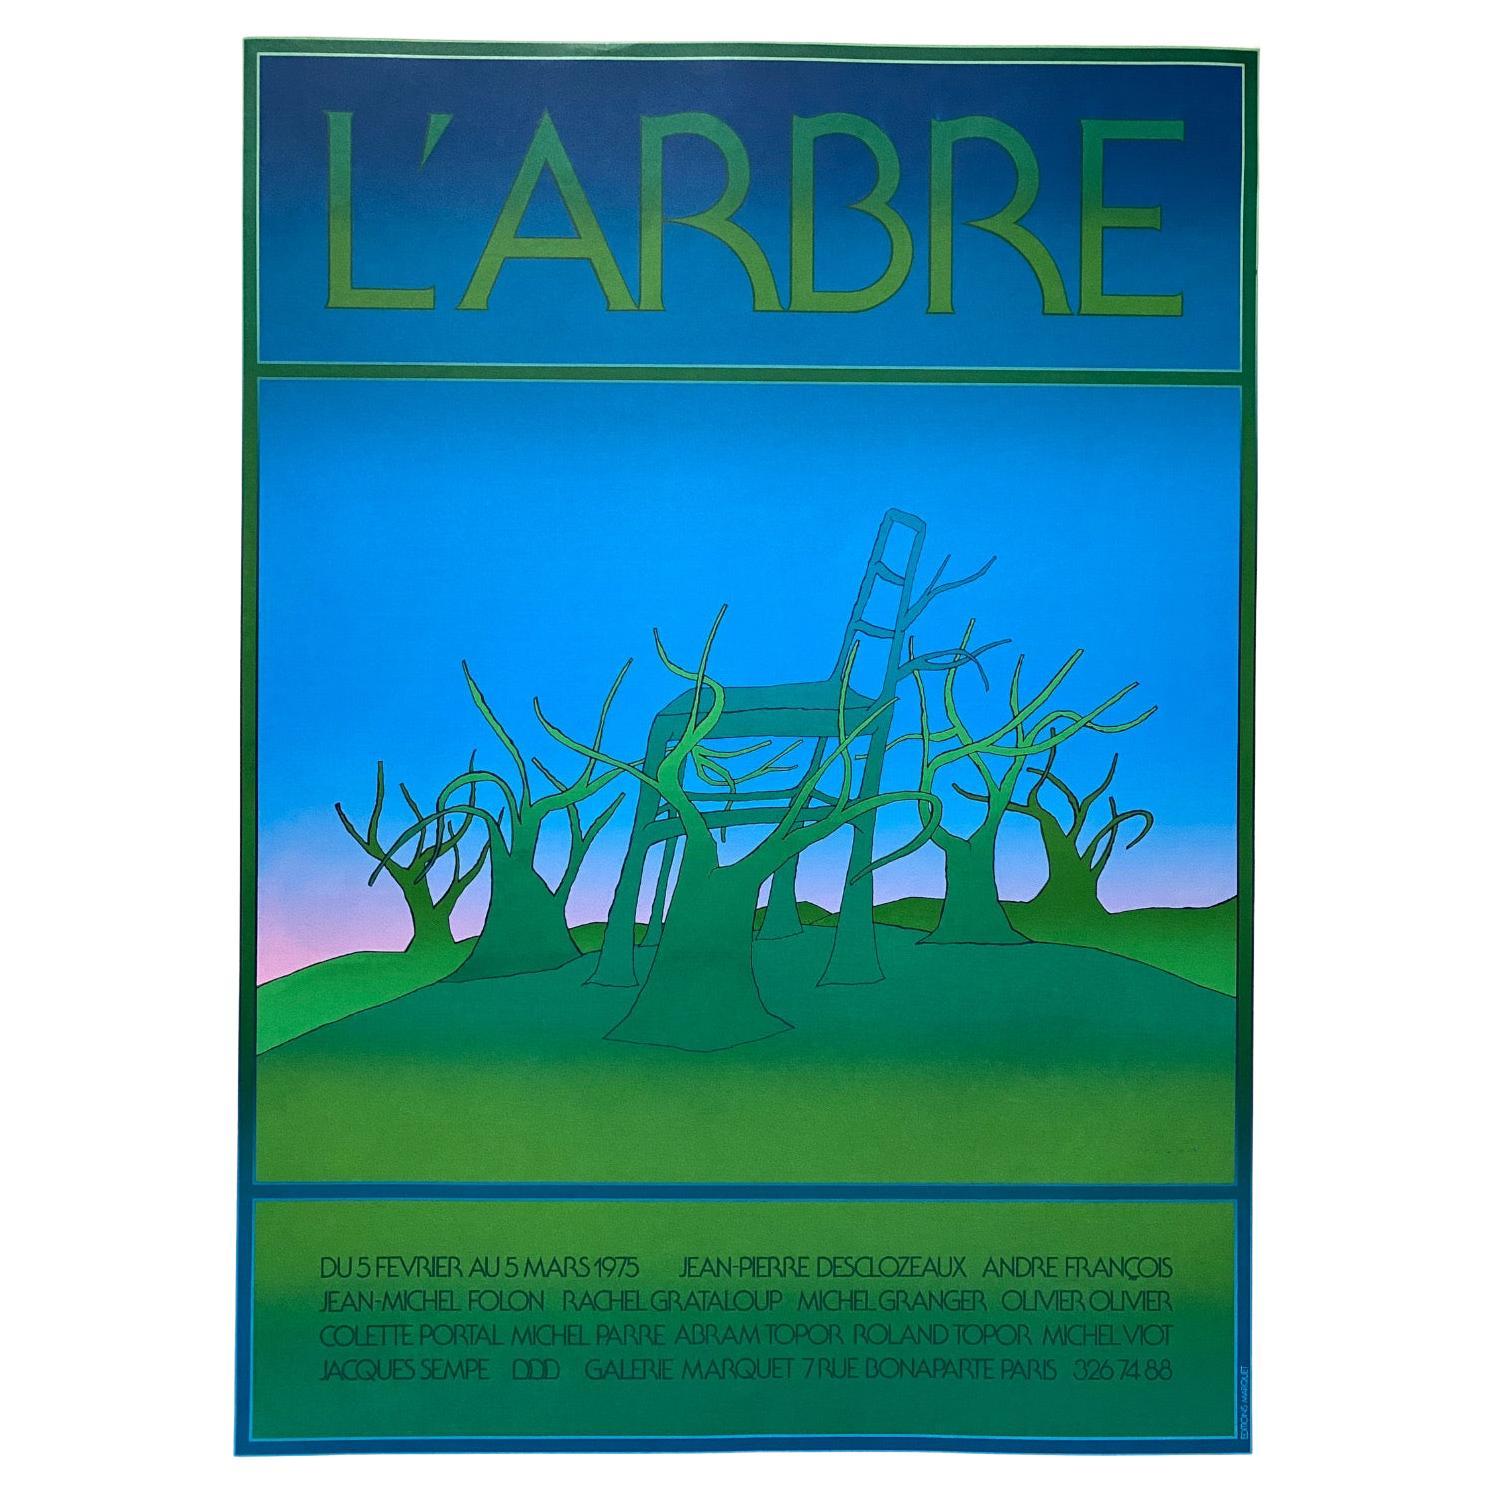 Serigrafie „L' Arbre“ von Jean Michel Folon für Gallerie Marquet, Paris - 1975